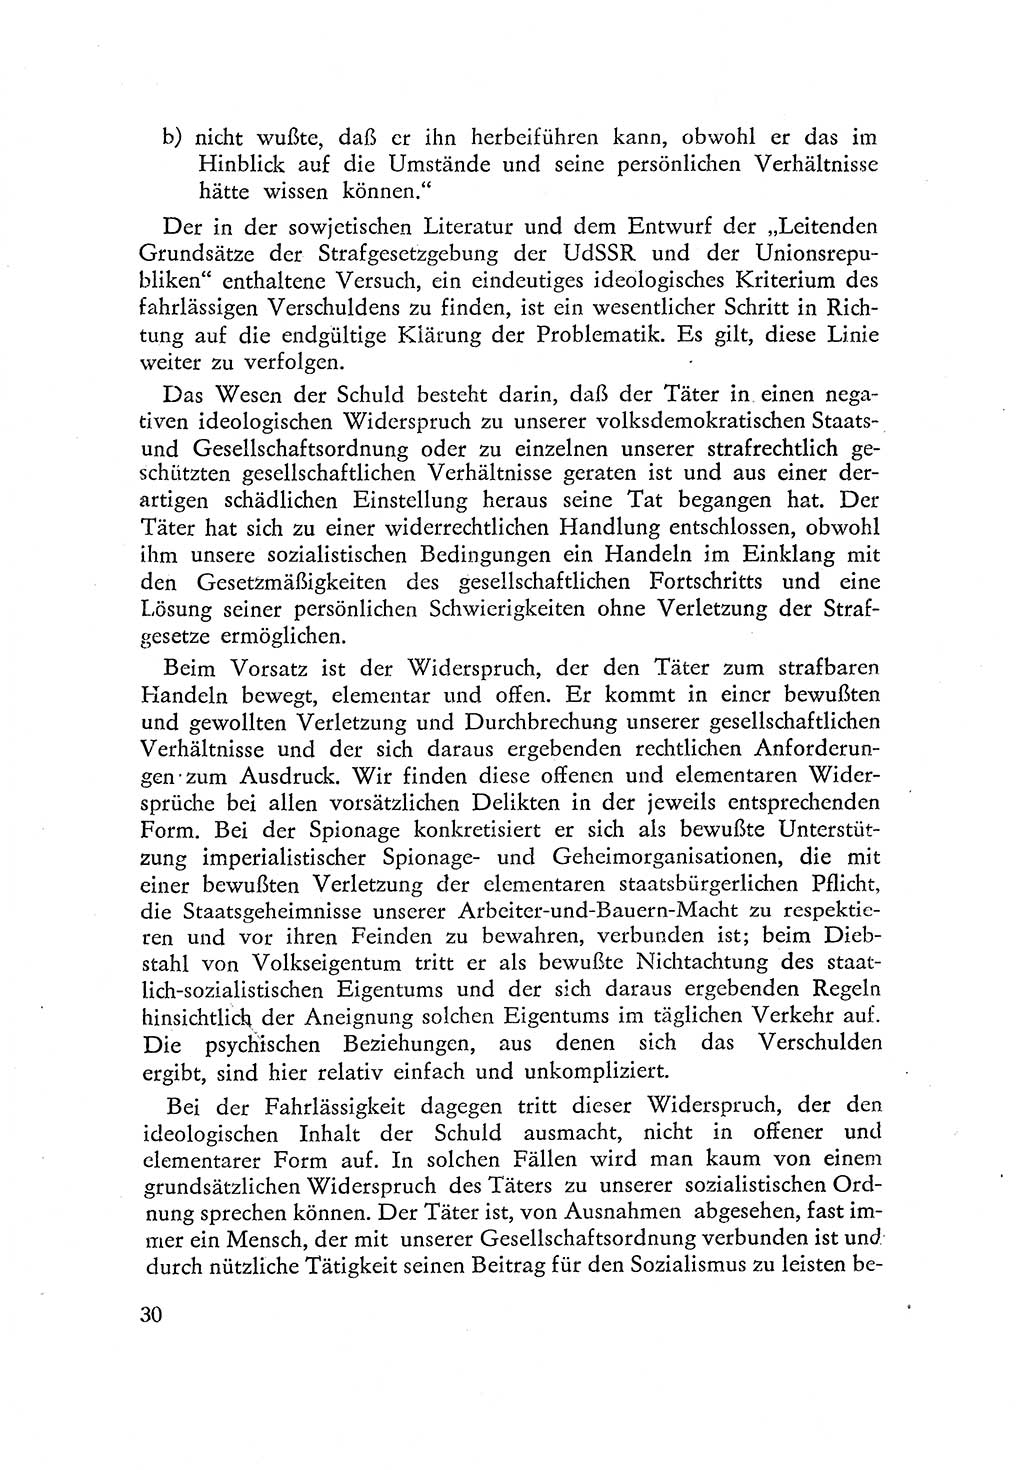 Beiträge zum Strafrecht [Deutsche Demokratische Republik (DDR)] 1959, Seite 30 (Beitr. Strafr. DDR 1959, S. 30)